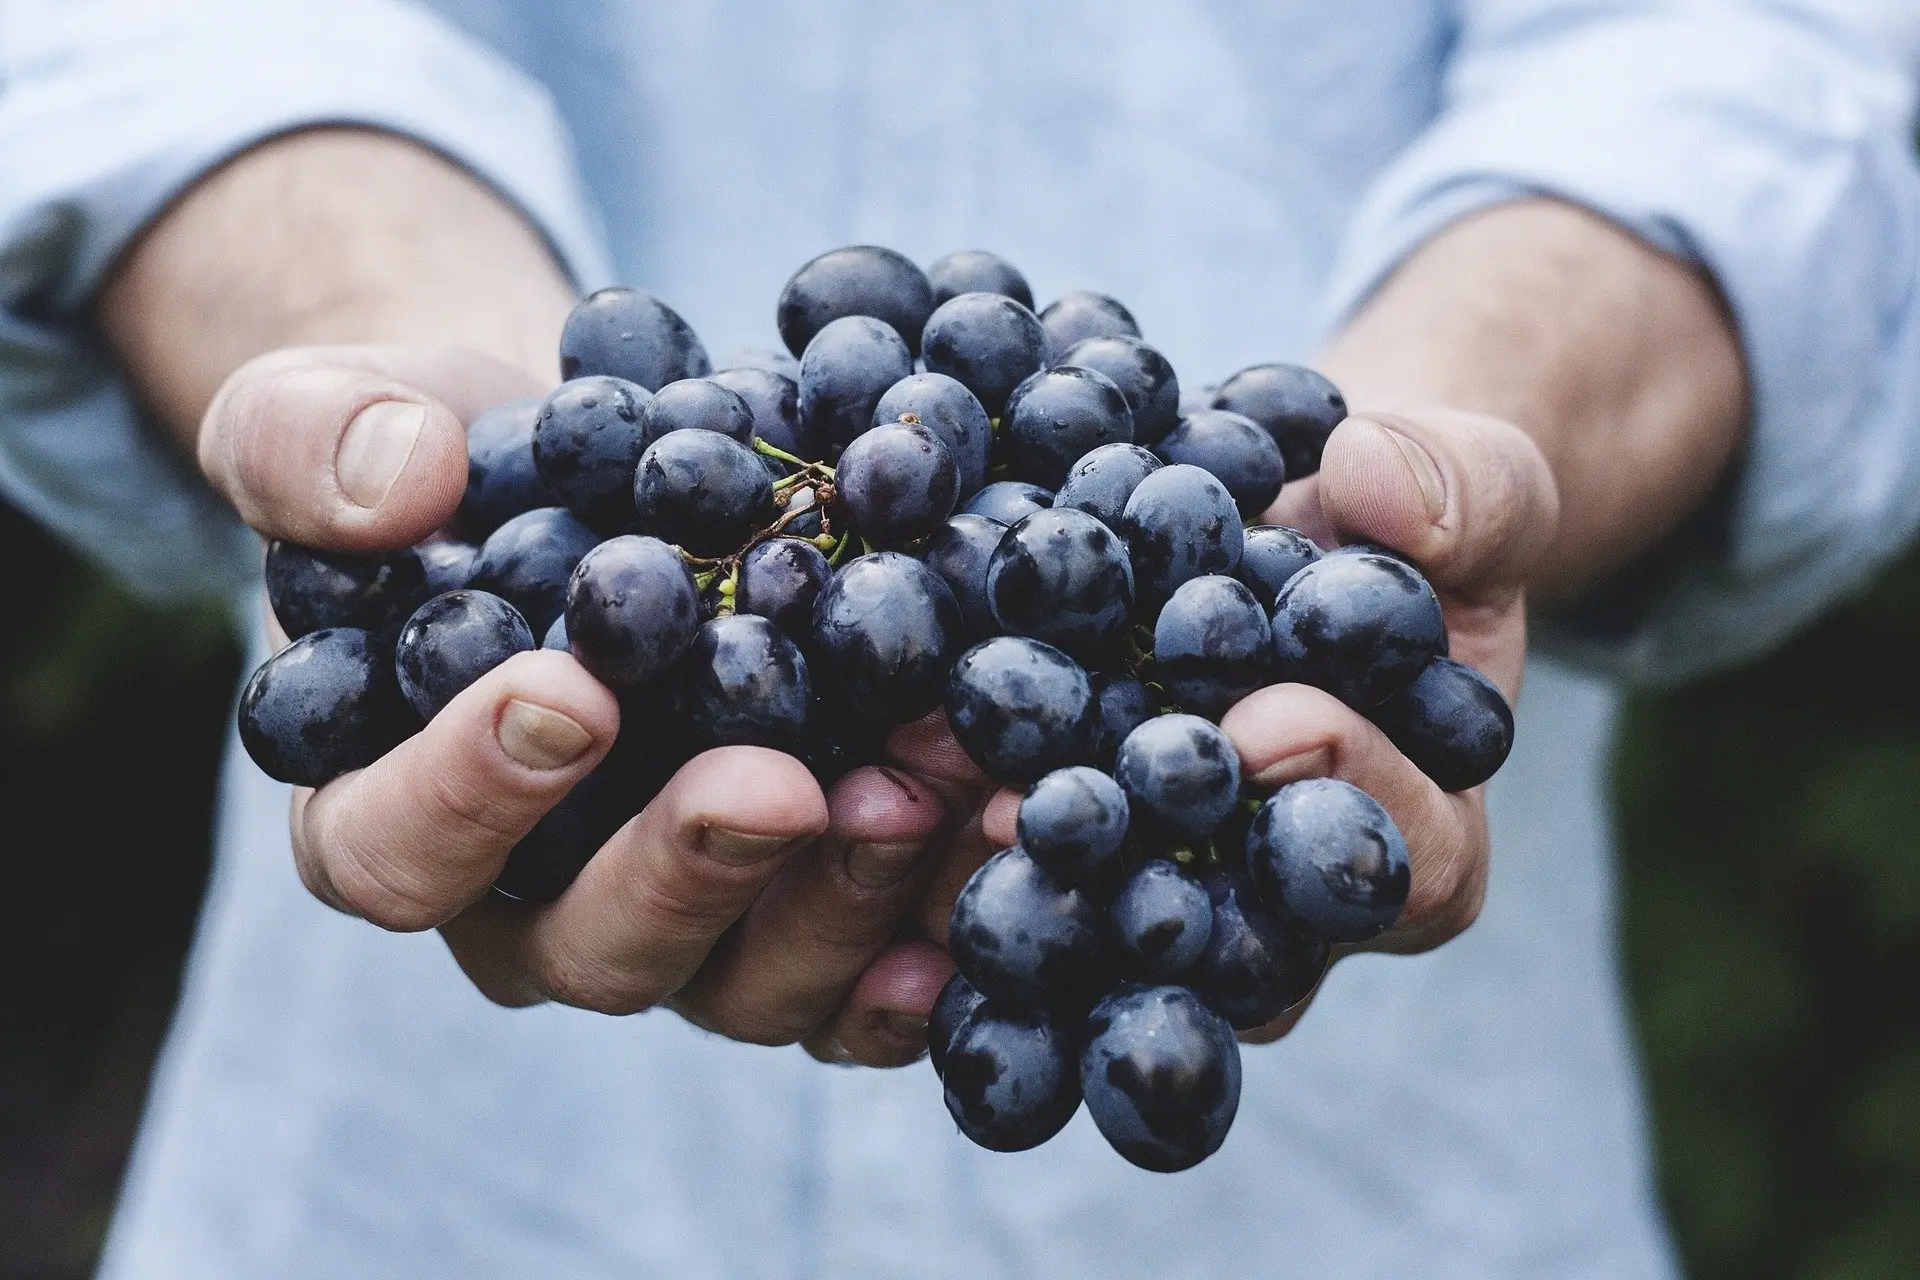 valor del flete de uvas en chile - Cómo se envían las uvas desde Chile